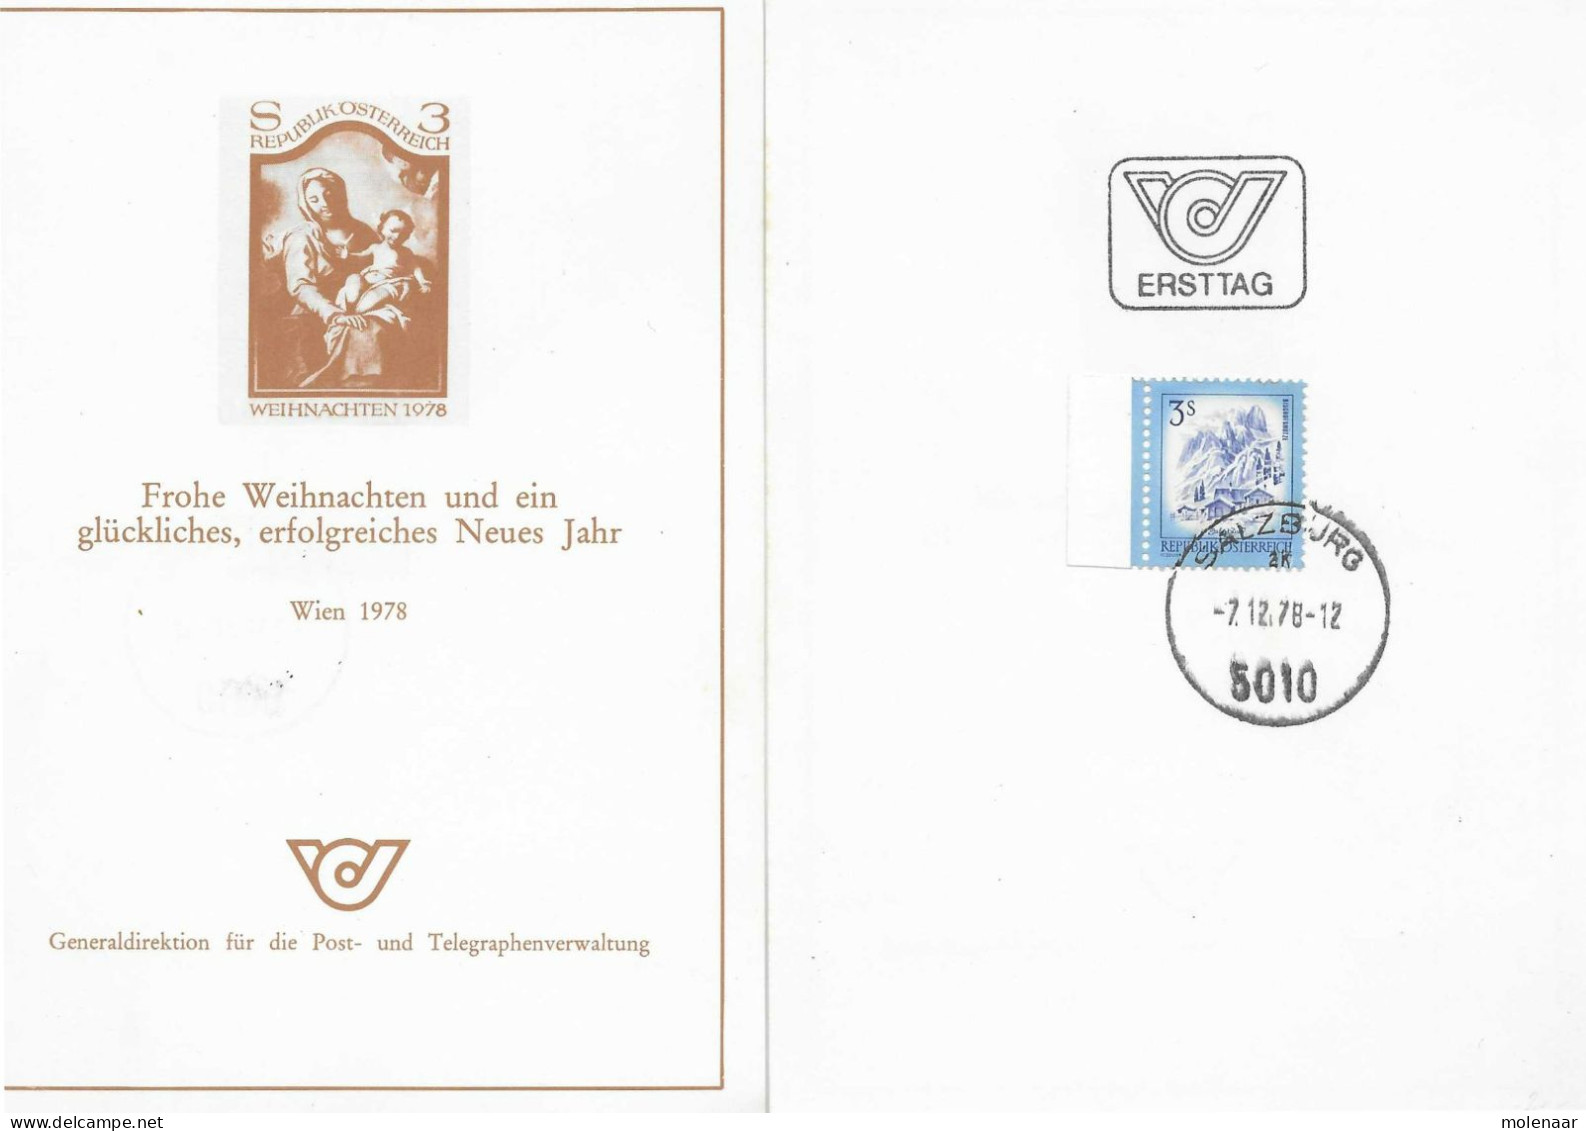 Postzegels > Europa > Oostenrijk >  Republiek > 1971-1900 > Kaart Uit 1978  Met 1 Postzegel (17770) - Briefe U. Dokumente